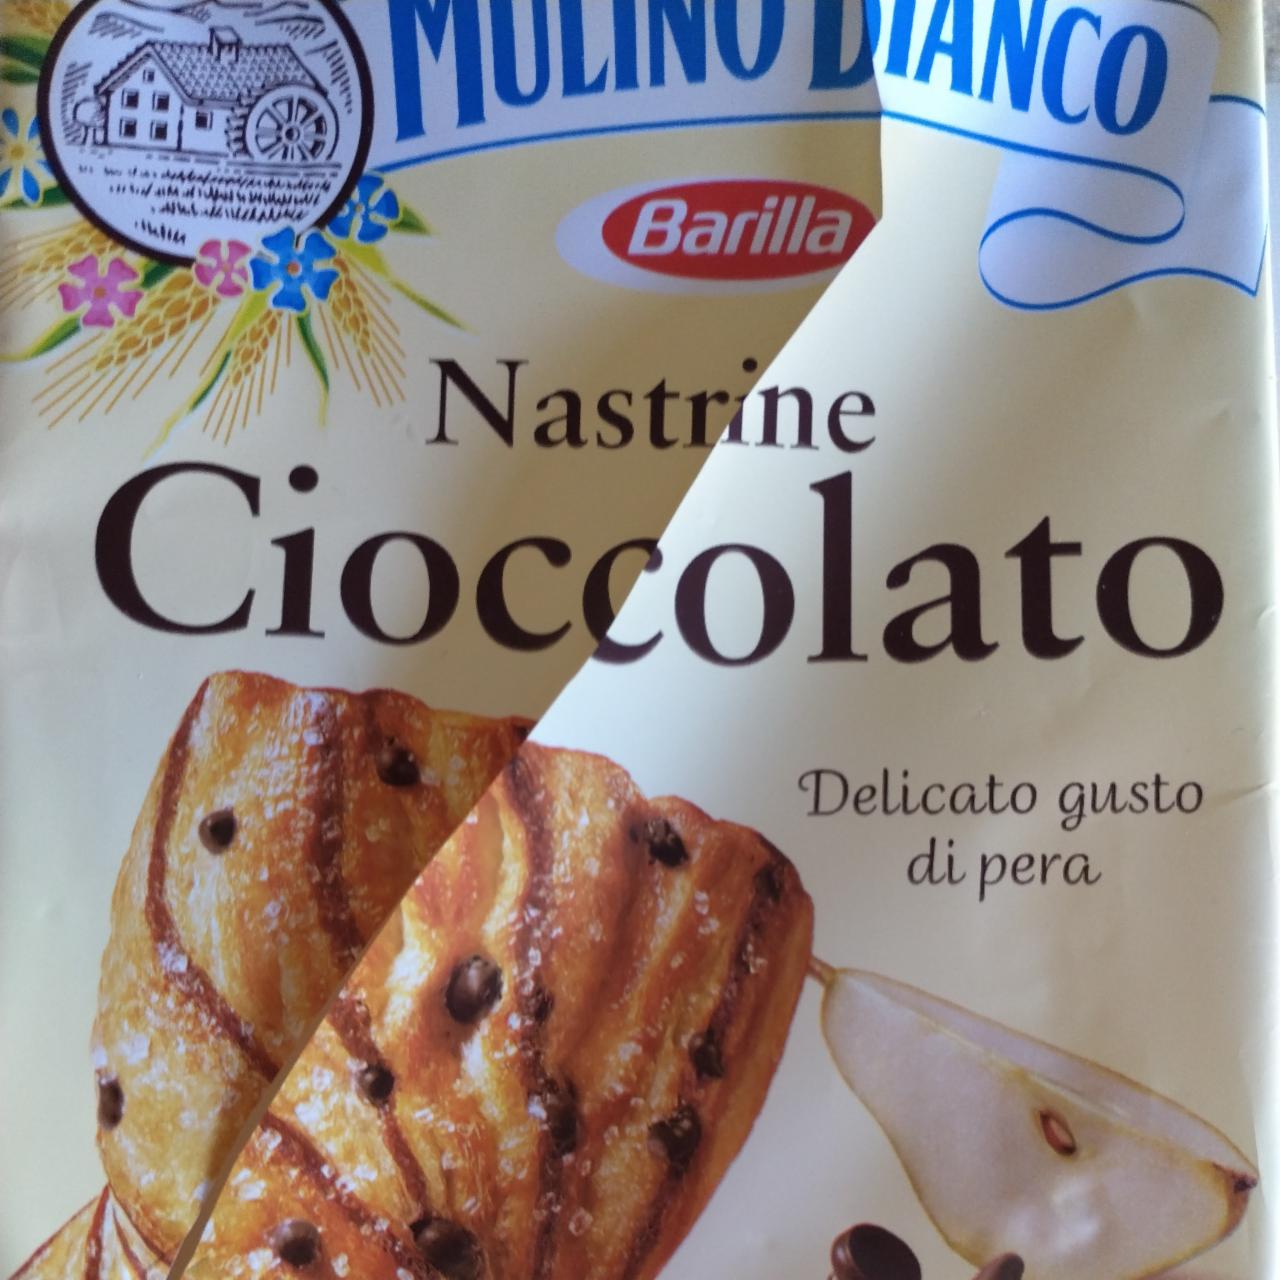 Фото - хлебобулочное изделие с грушей и шоколадом Nastrine Mulino blanco Barilla